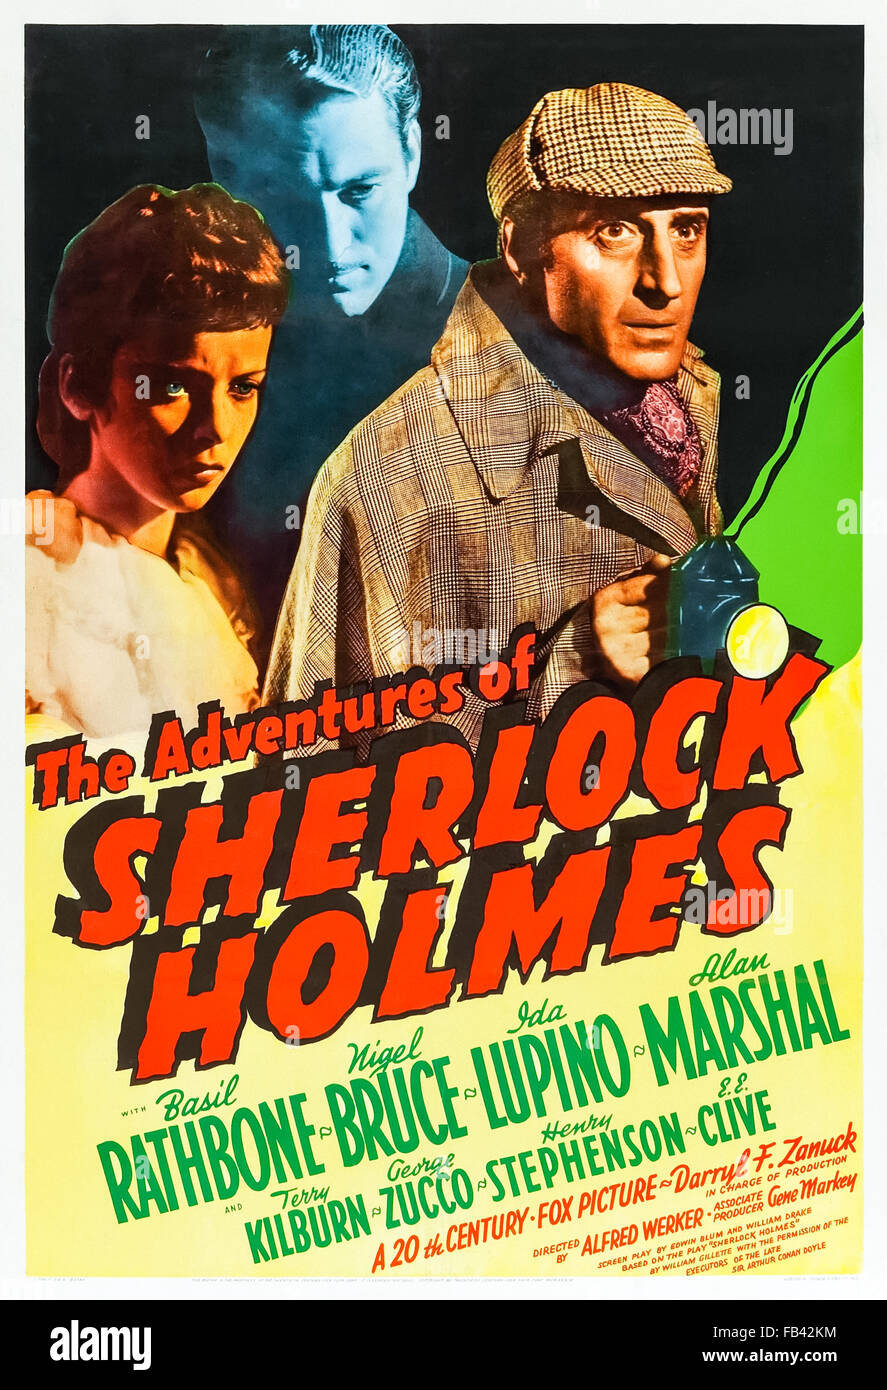 Affiche pour 'Le Les aventures de Sherlock Holmes" film Sherlock Holmes 1939 réalisé par Alfred L. Werker et avec Basil Rathbone (Holmes) ; Nigel Bruce (Watson) et IDA Lupino (Ann Brandon). Voir la description pour plus d'informations. Banque D'Images